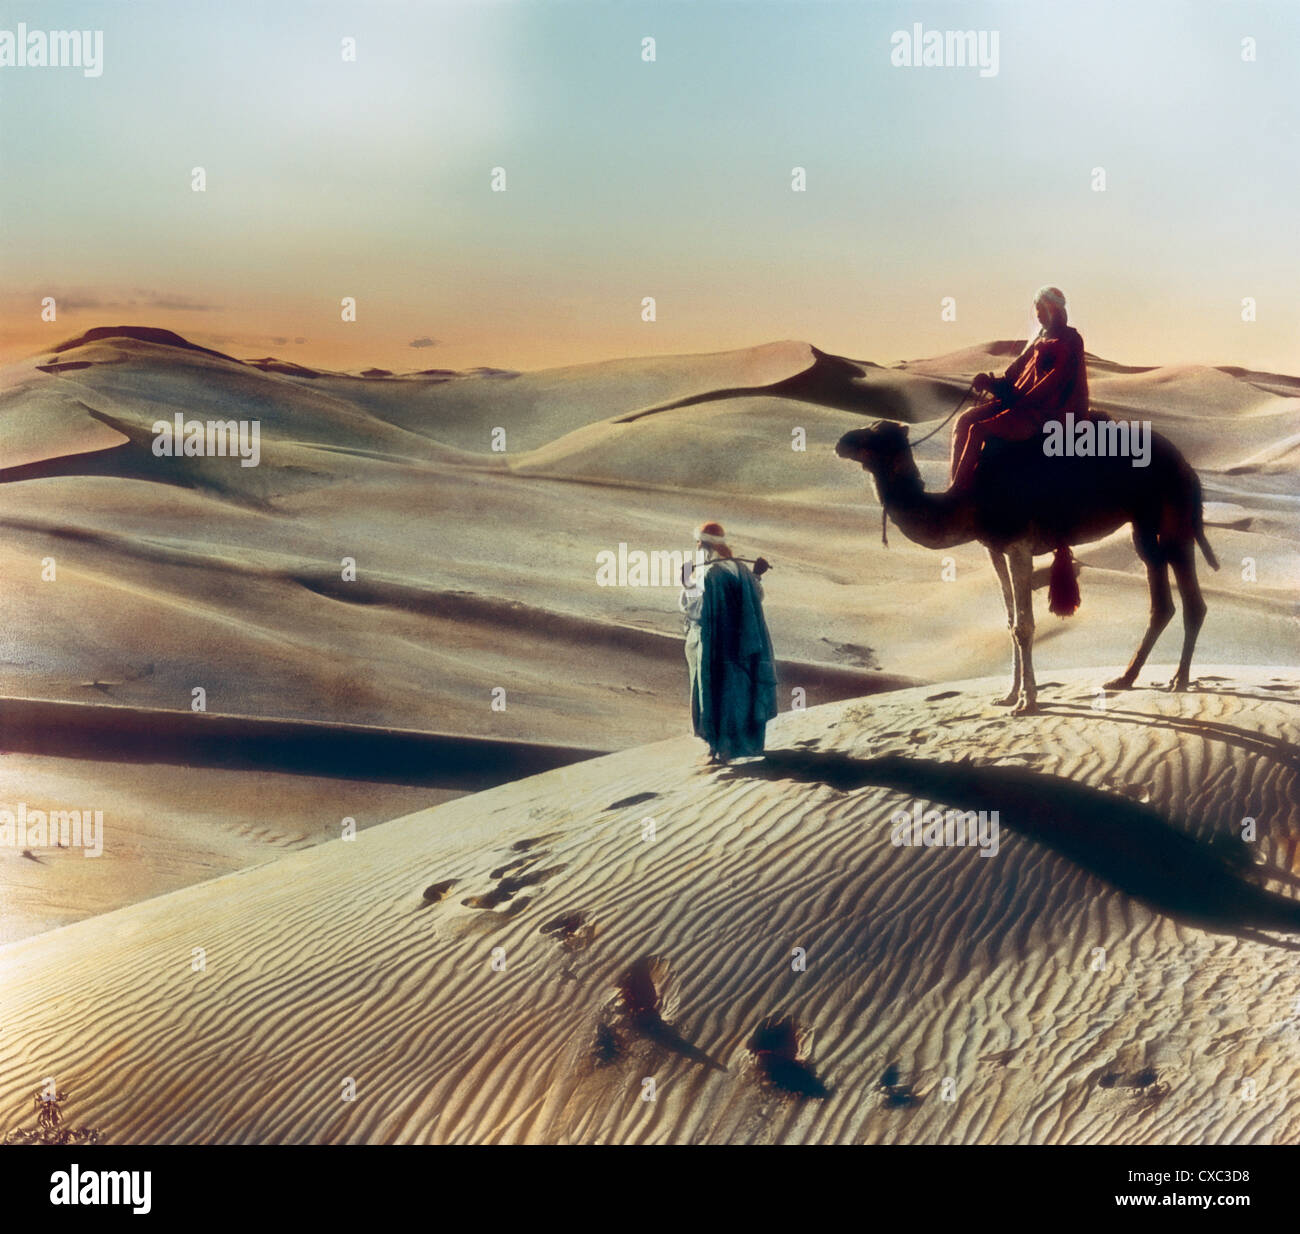 Photo colorisée d'une personne à cheval sur un chameau arrêtée sur une dune de sable dans le désert au coucher du soleil, Giza, Egypte, 1906. Un homme, peut-être un guide, se tient devant le chameau et tient un fouet sur son dos. (Photo de Burton Holmes) Banque D'Images